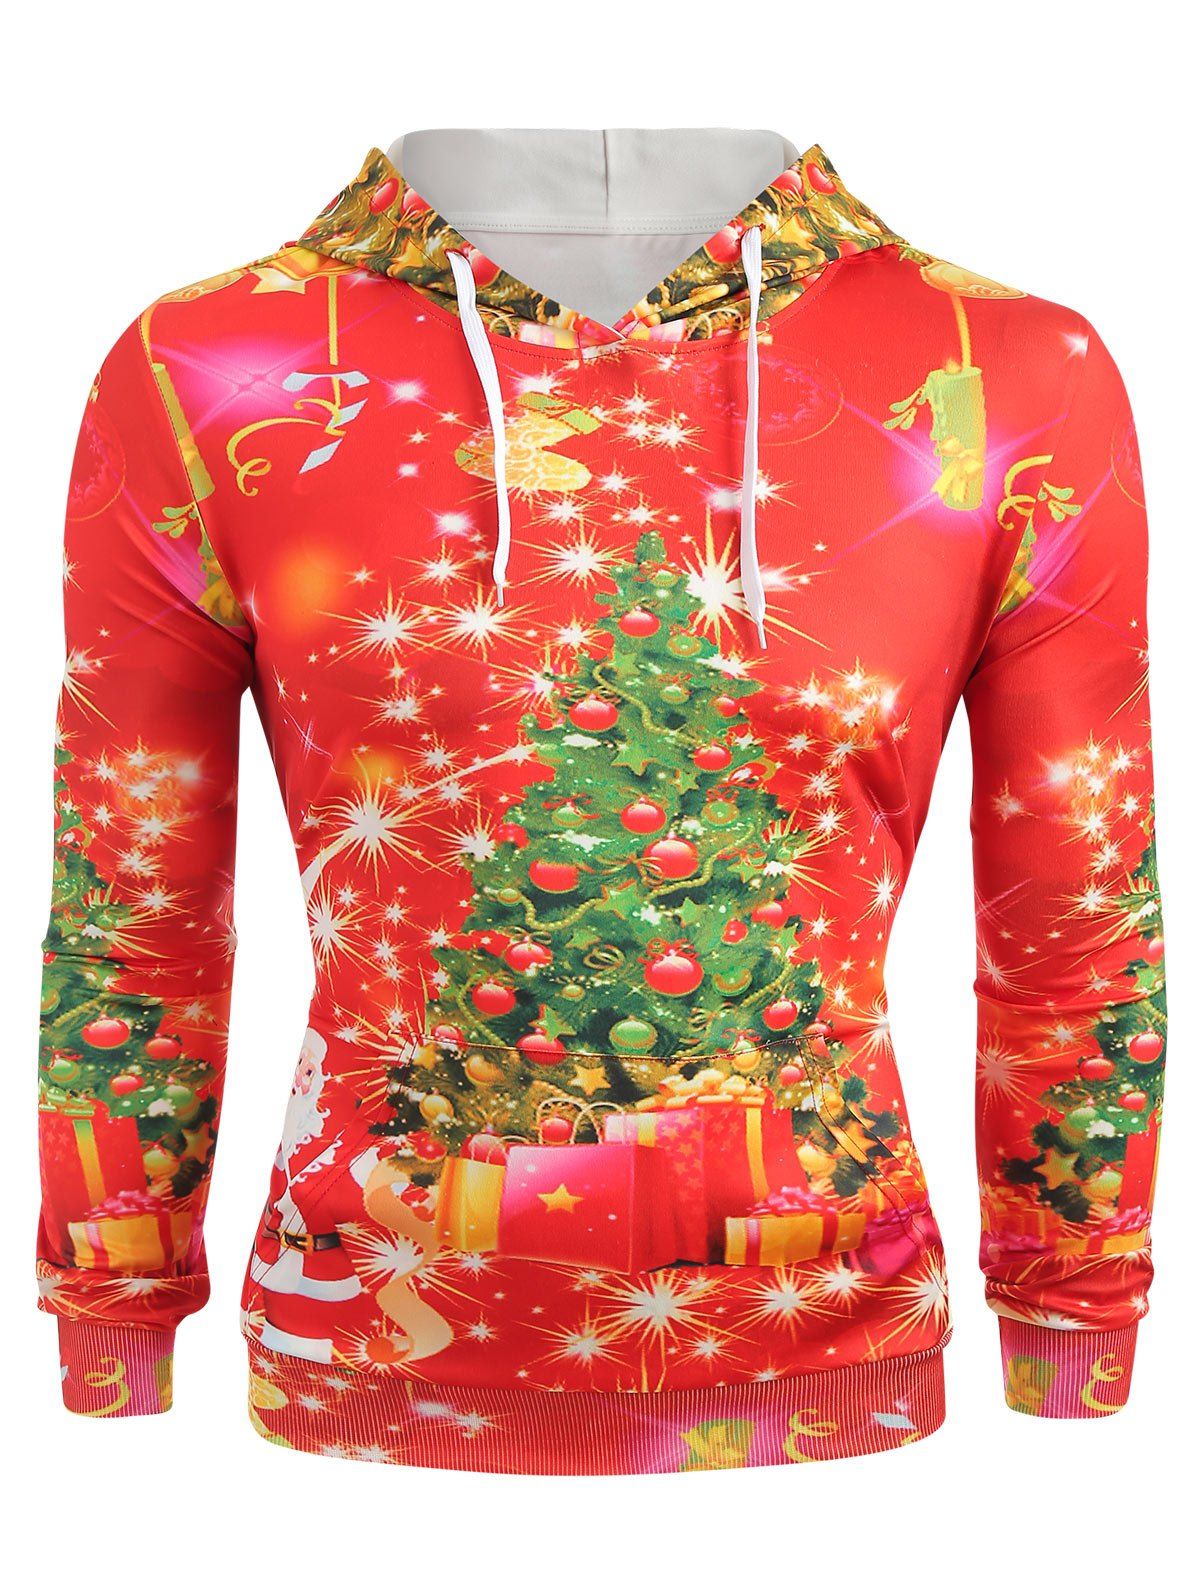 Sweat-Shirt à Capuche Manches Longues avec Imprimé Sapin de Noël - Rouge L